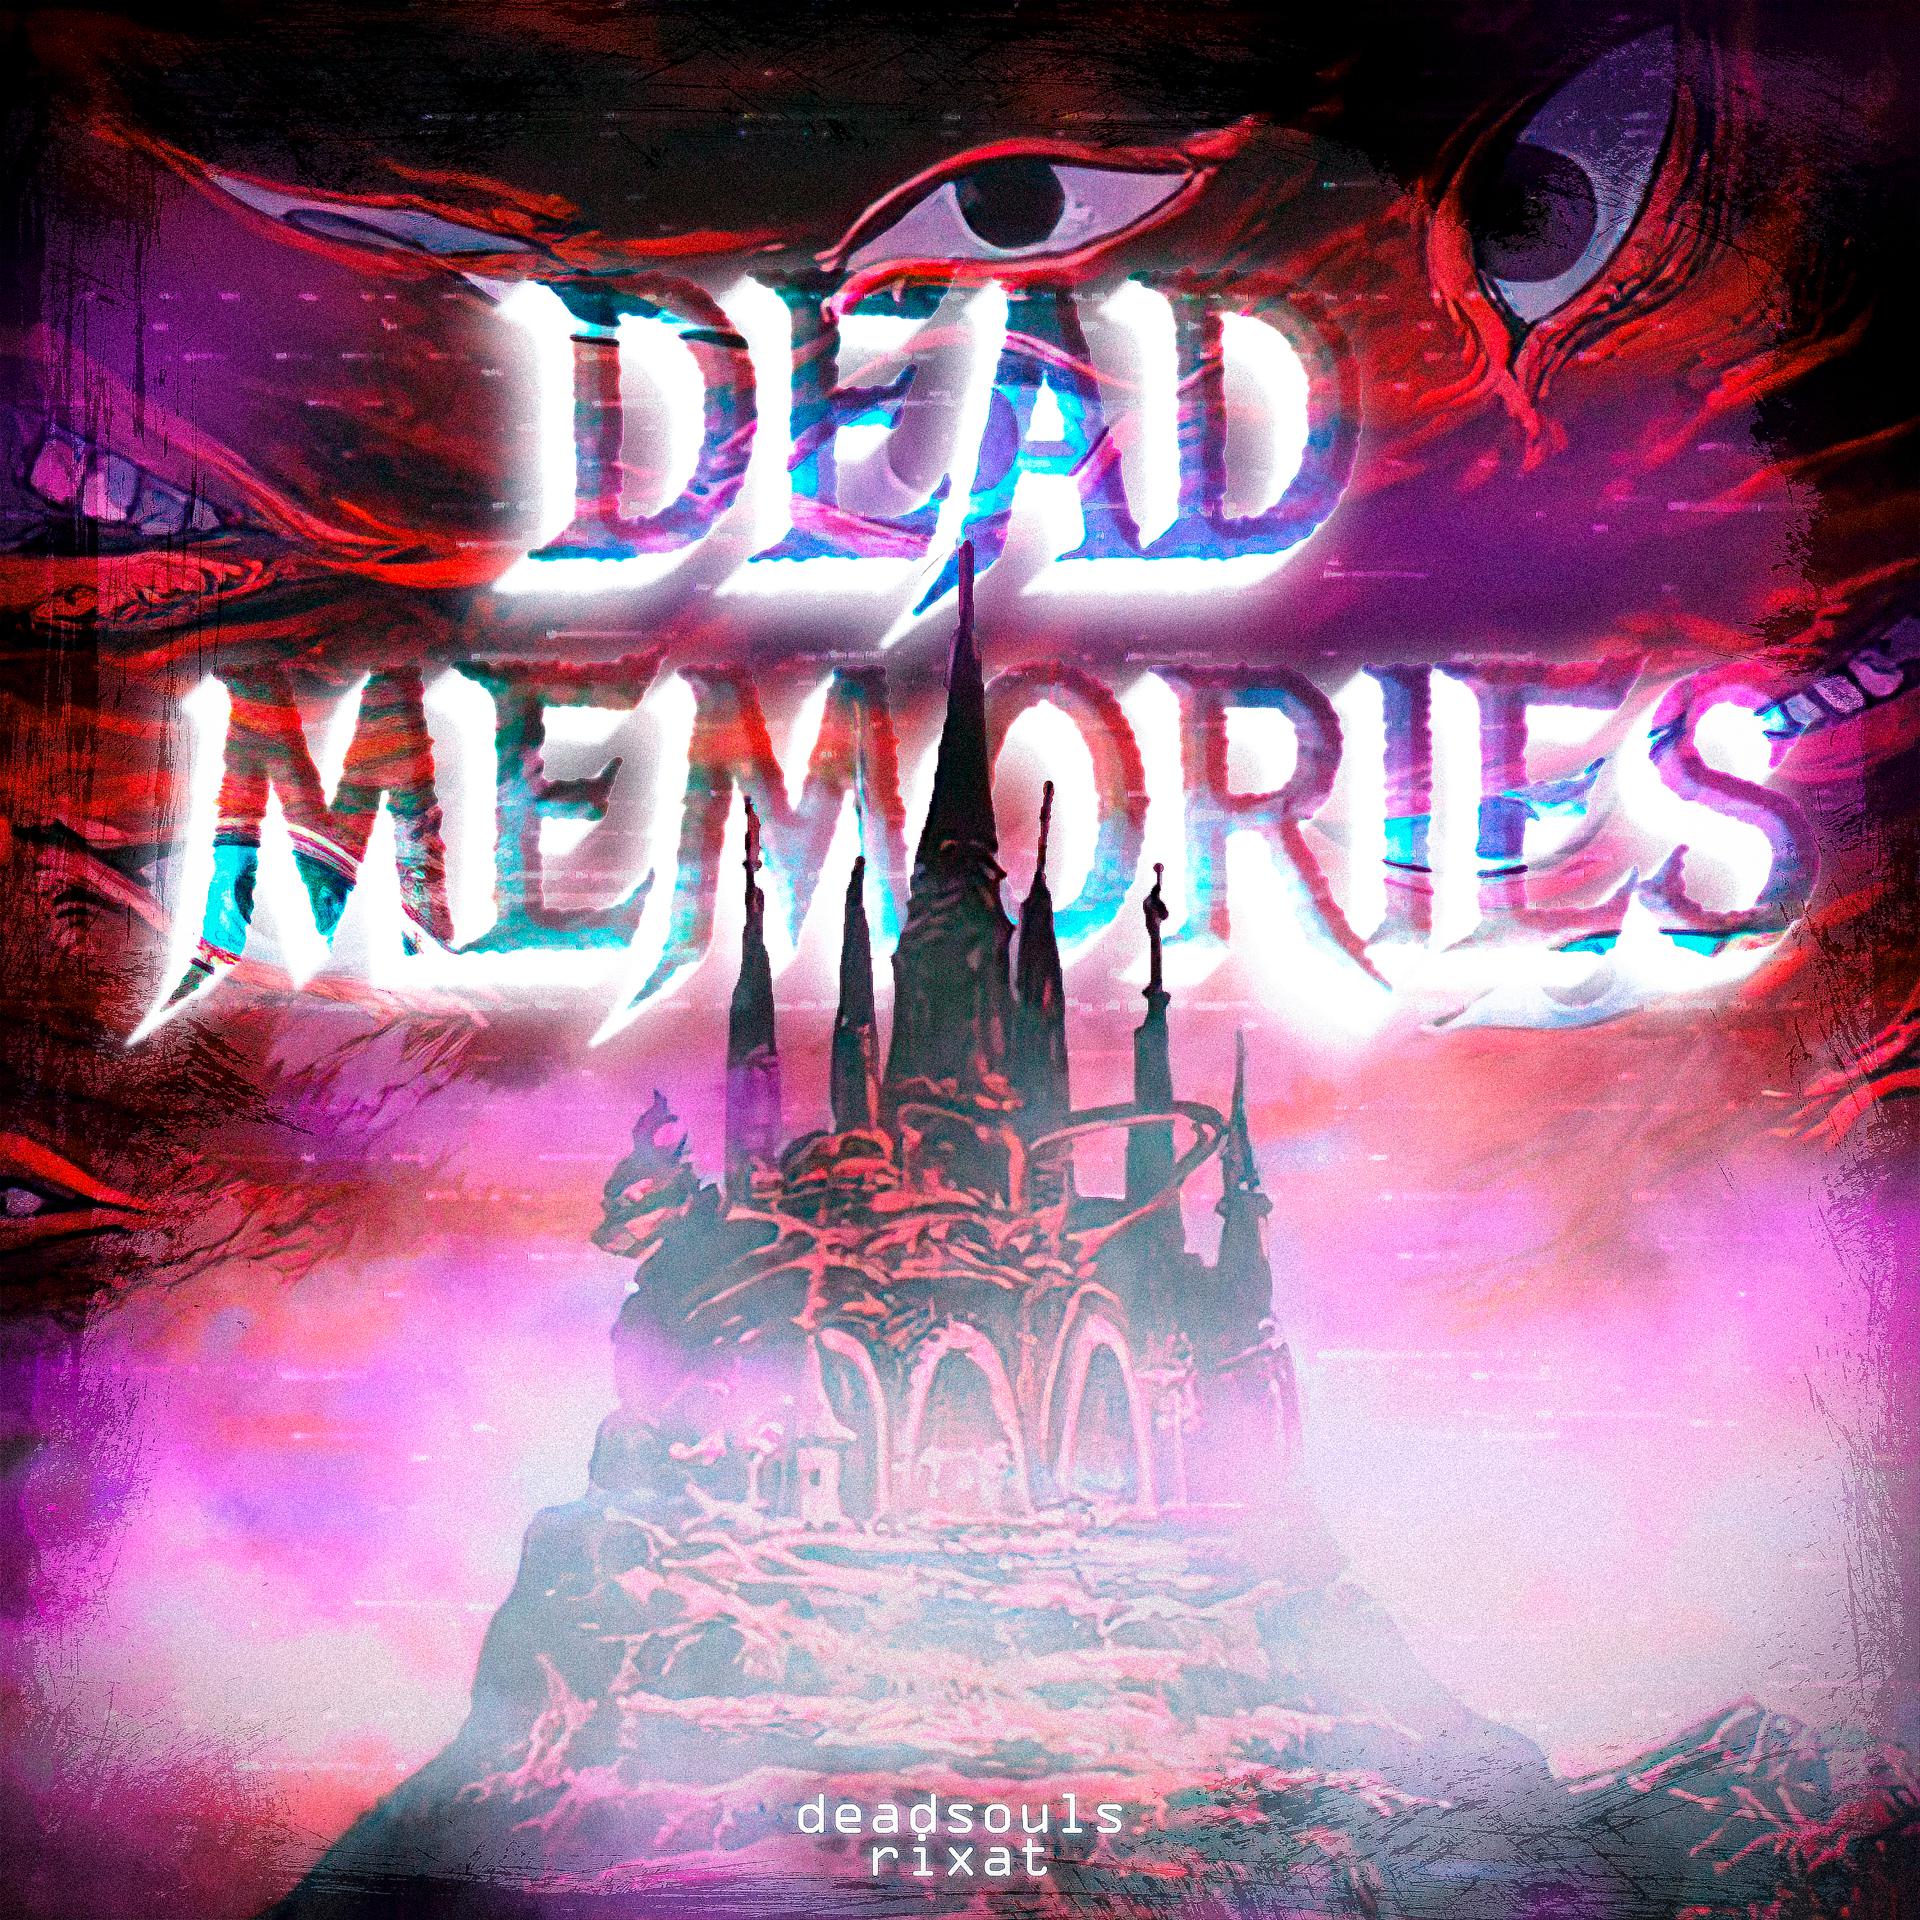 Постер альбома Dead Memories